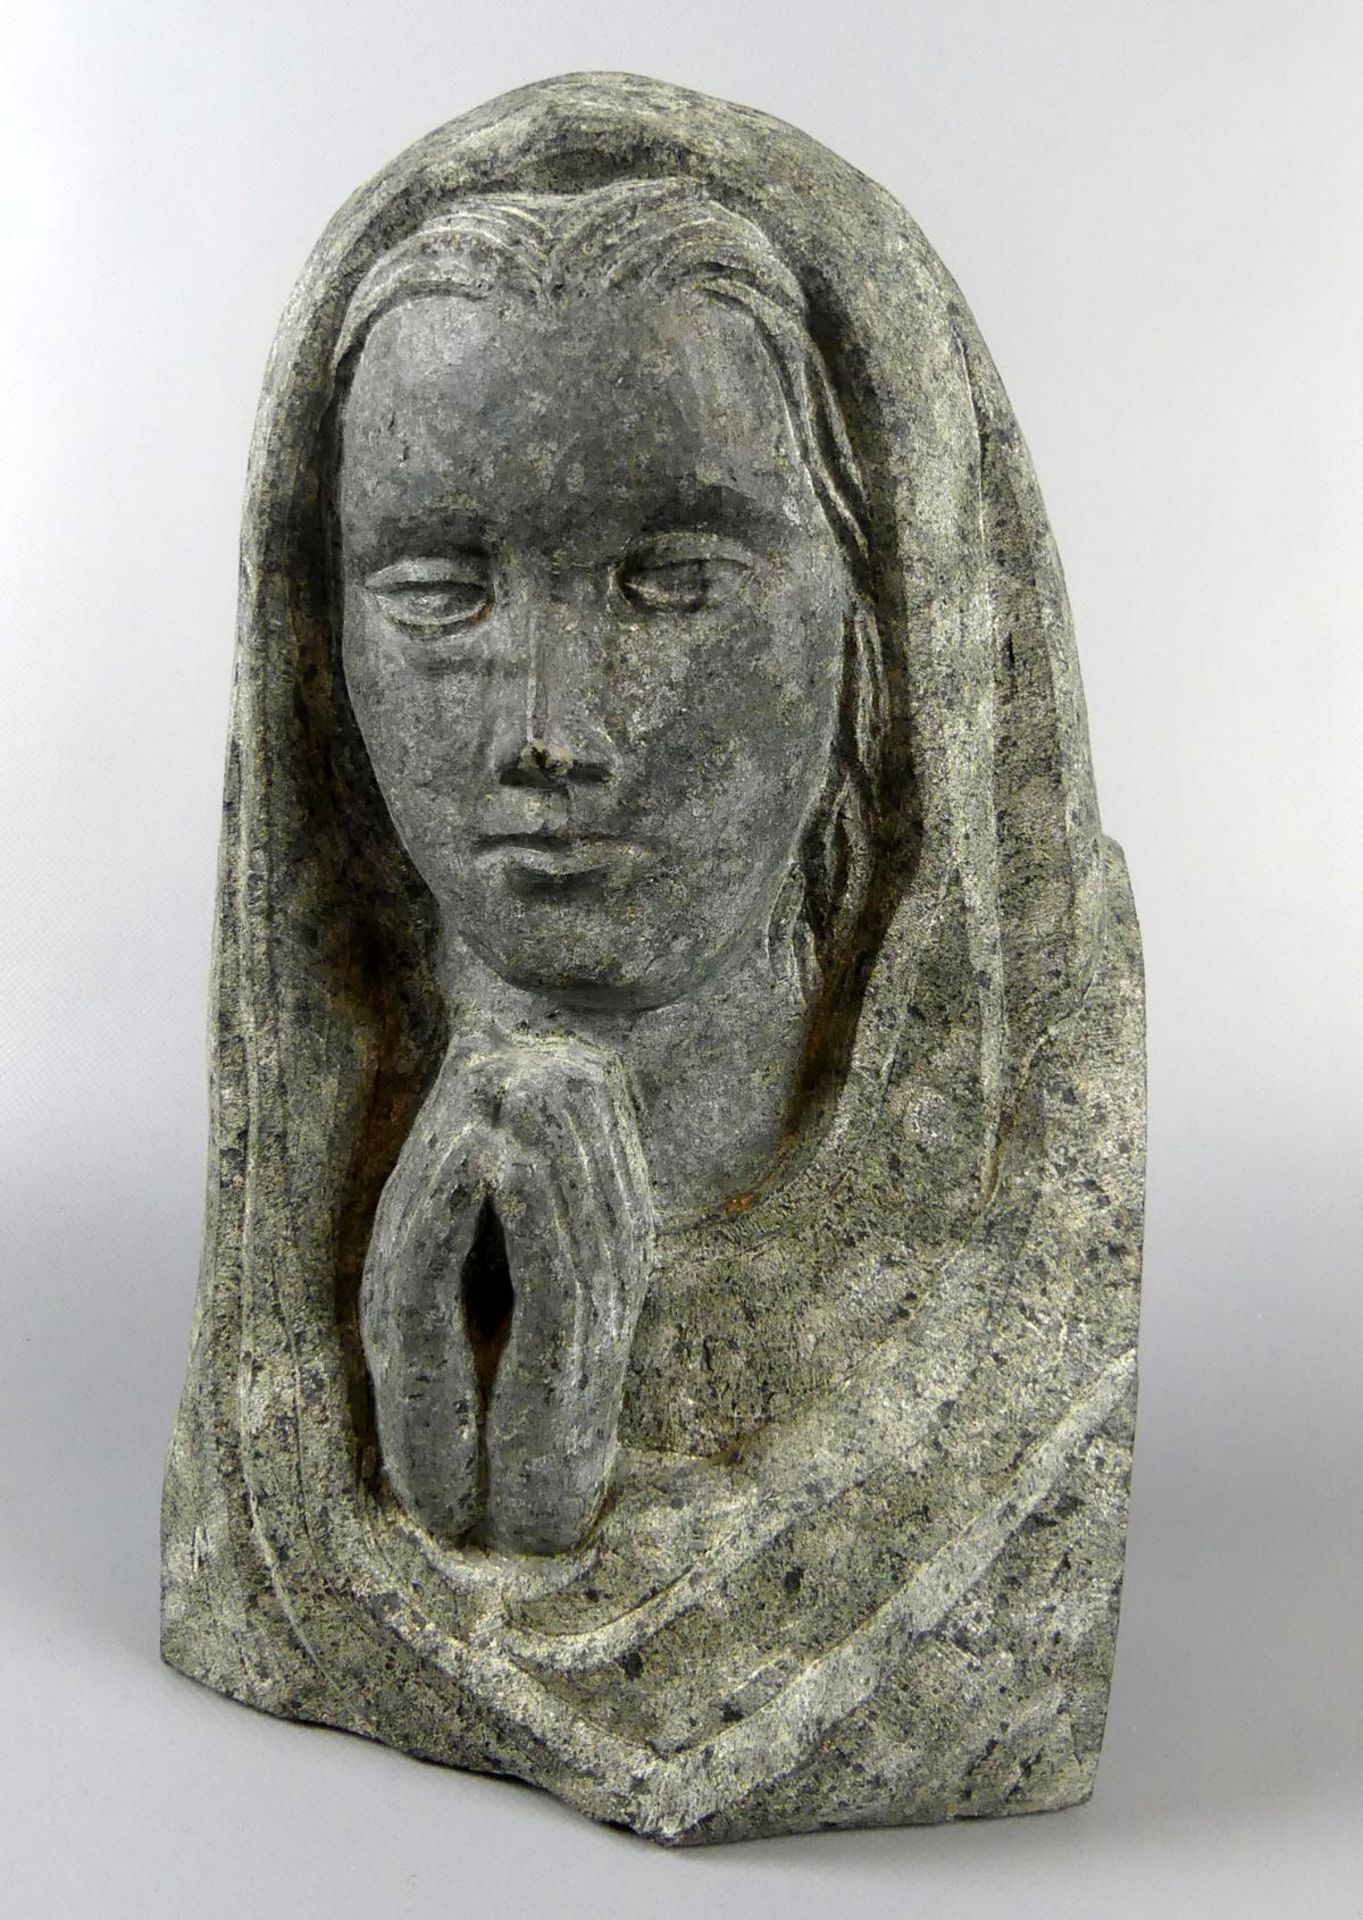 Skulptur, "Betende", unten monogr. HJK?, dat. 12.88, schwarzer Marmor,